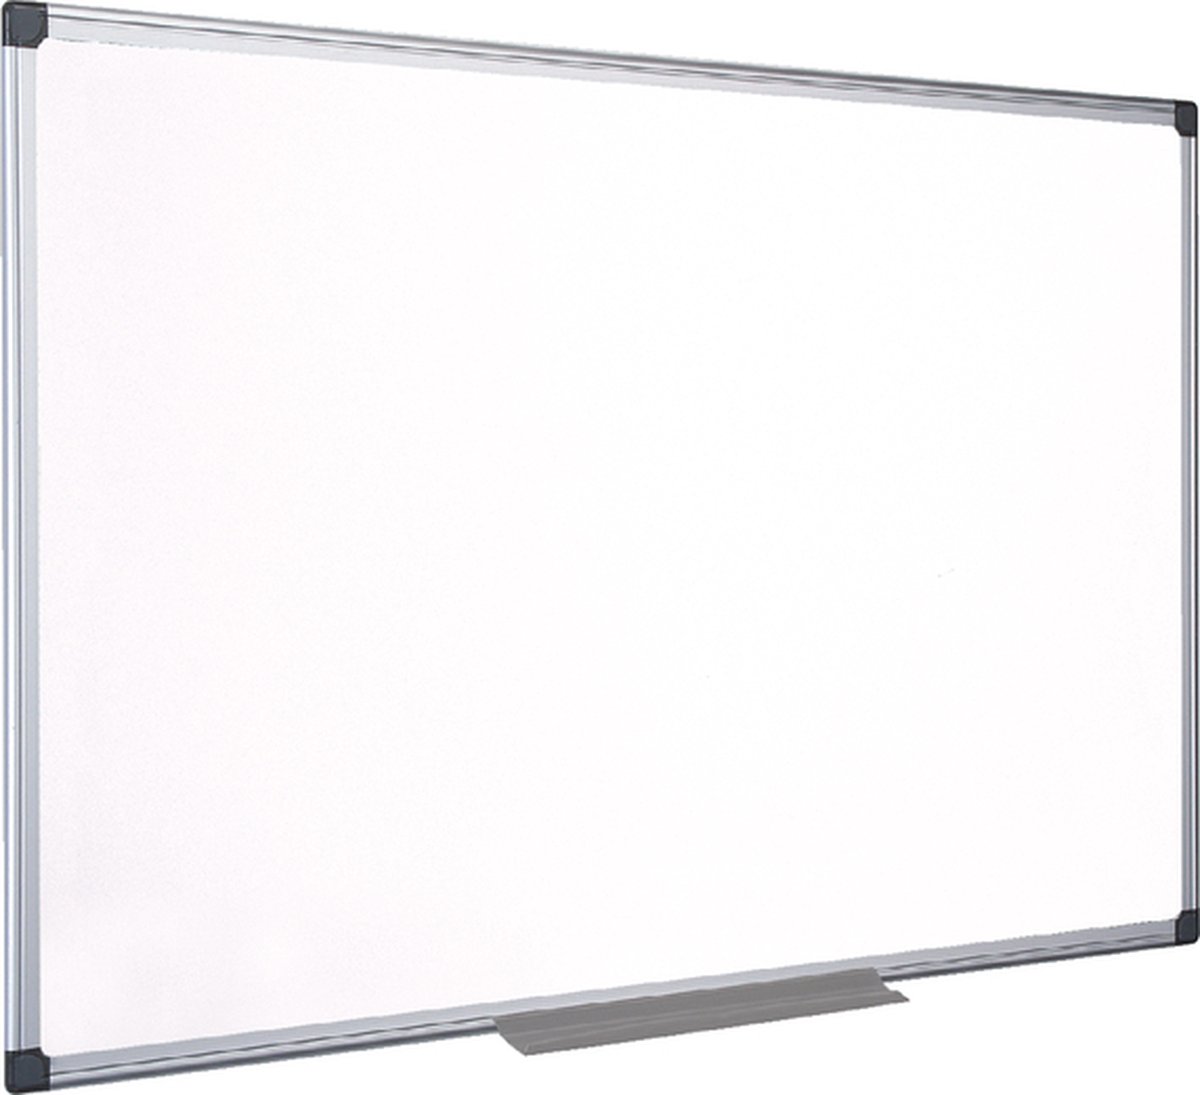 Quantore Whiteboard